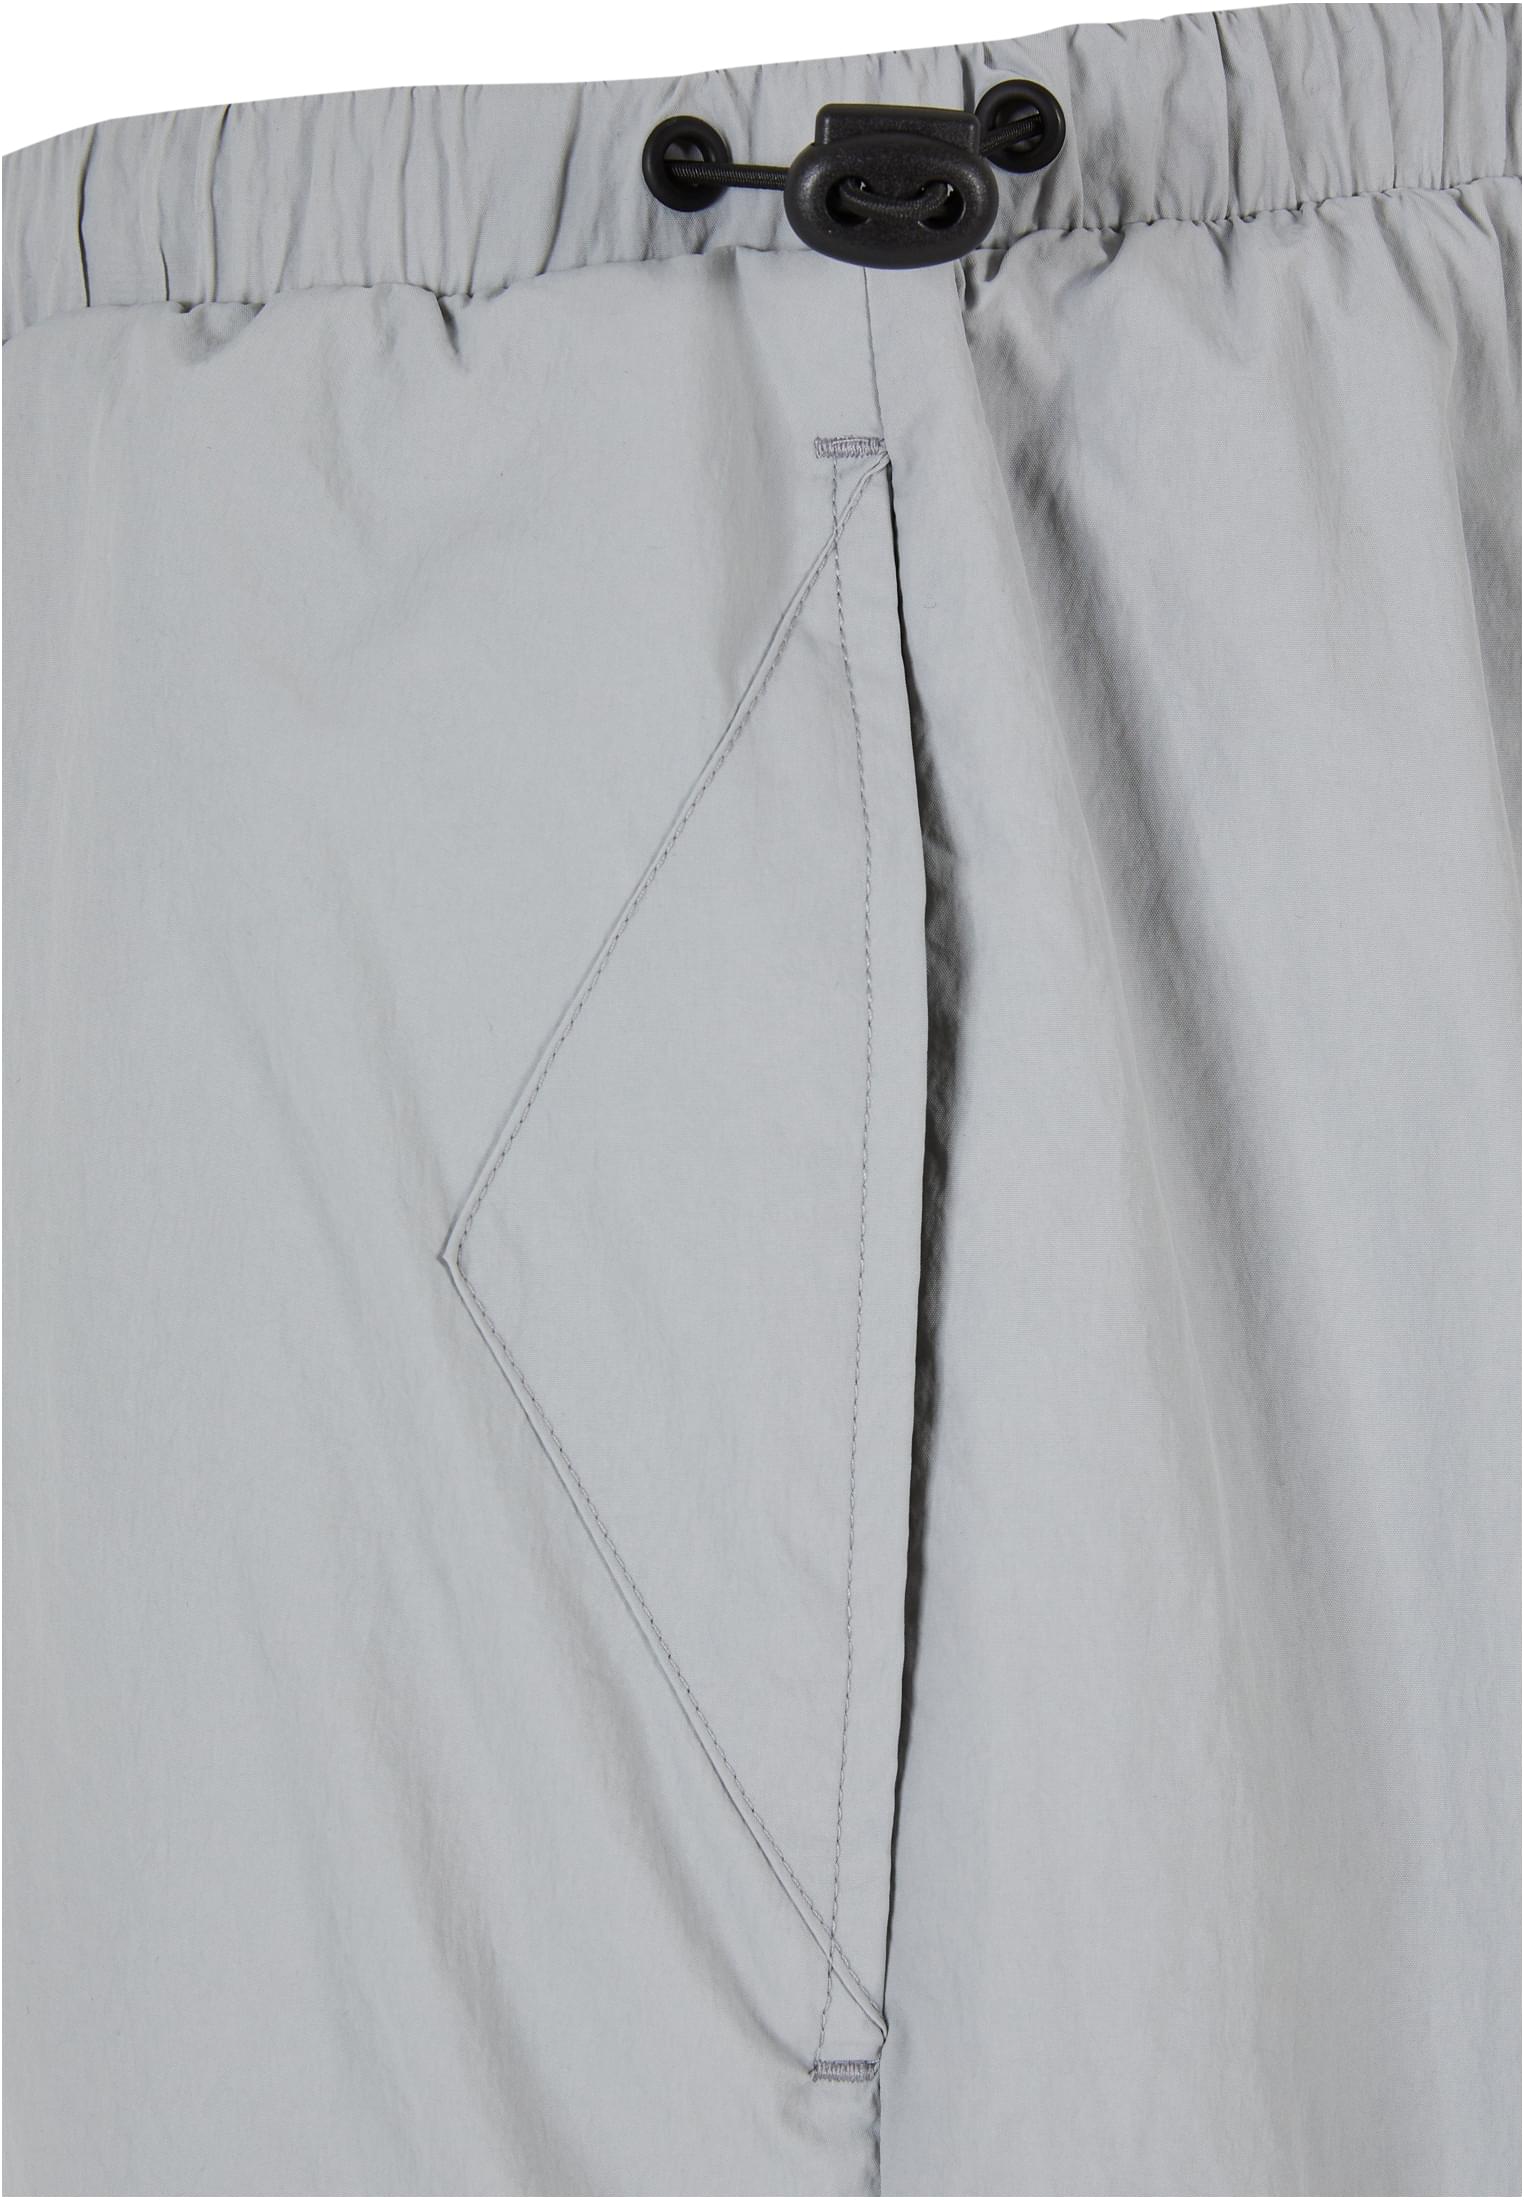 Parachute Pants-TB6349 Nylon